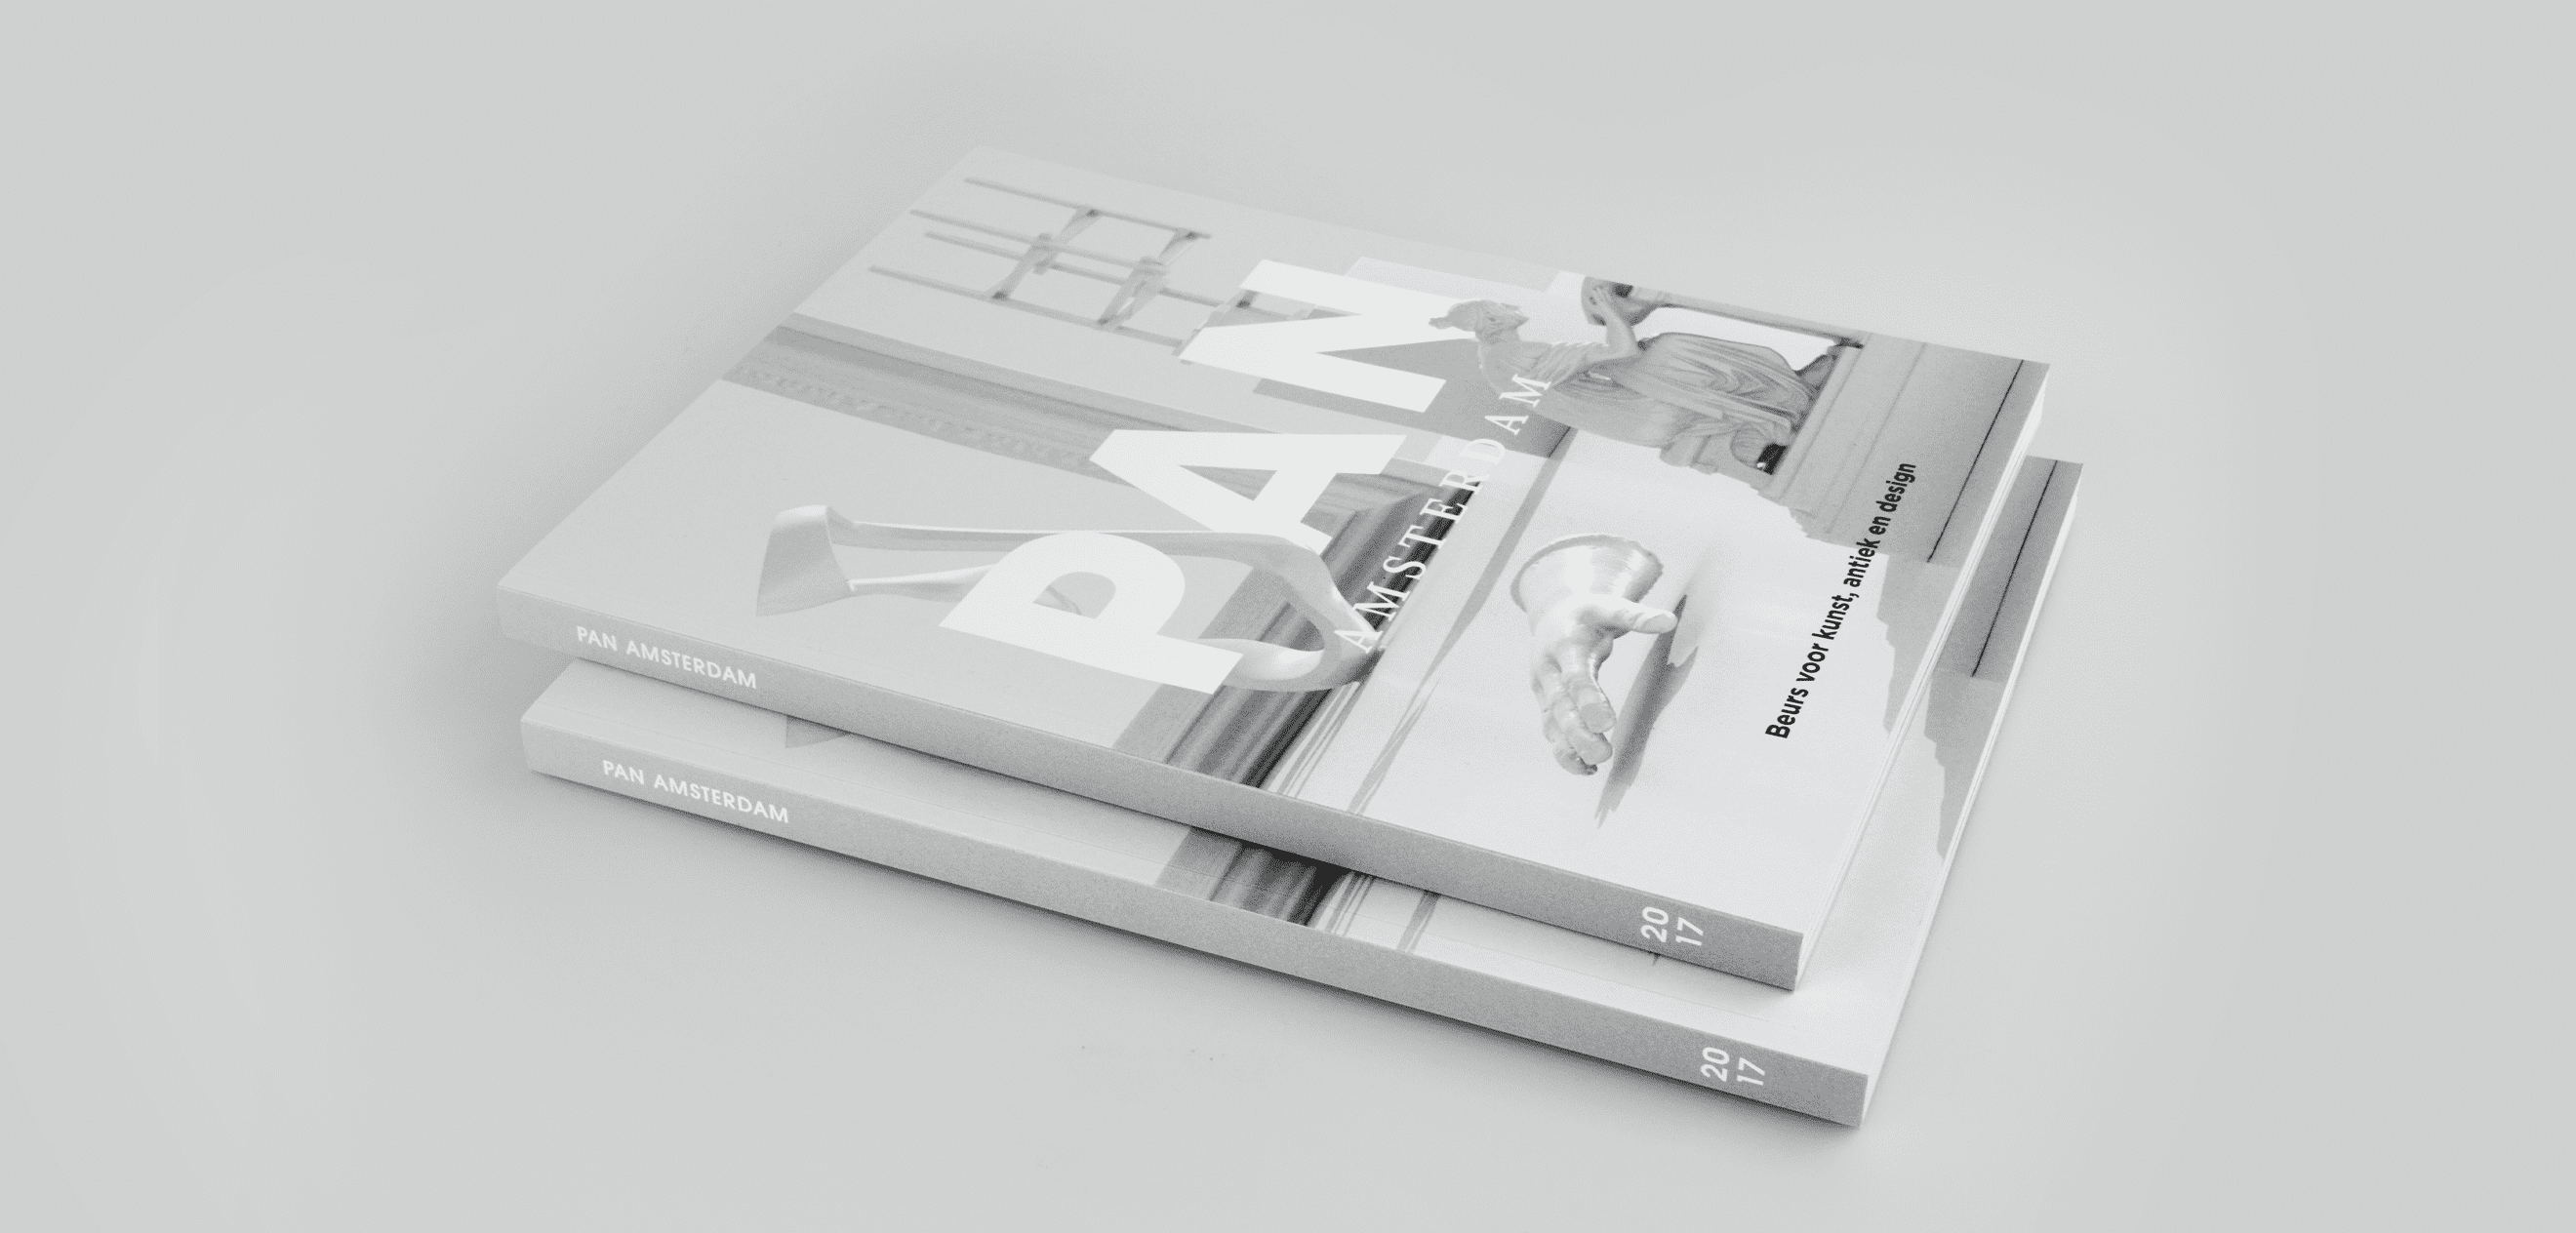 PAN Amsterdam, 2017, Catalogus, Magazine, Grafisch ontwerp, Graphic design, Magazine, Catalogus, Koen Hauser, Campagnebeeld, Grijs, Wit, Objecten, Fotografie, Photography